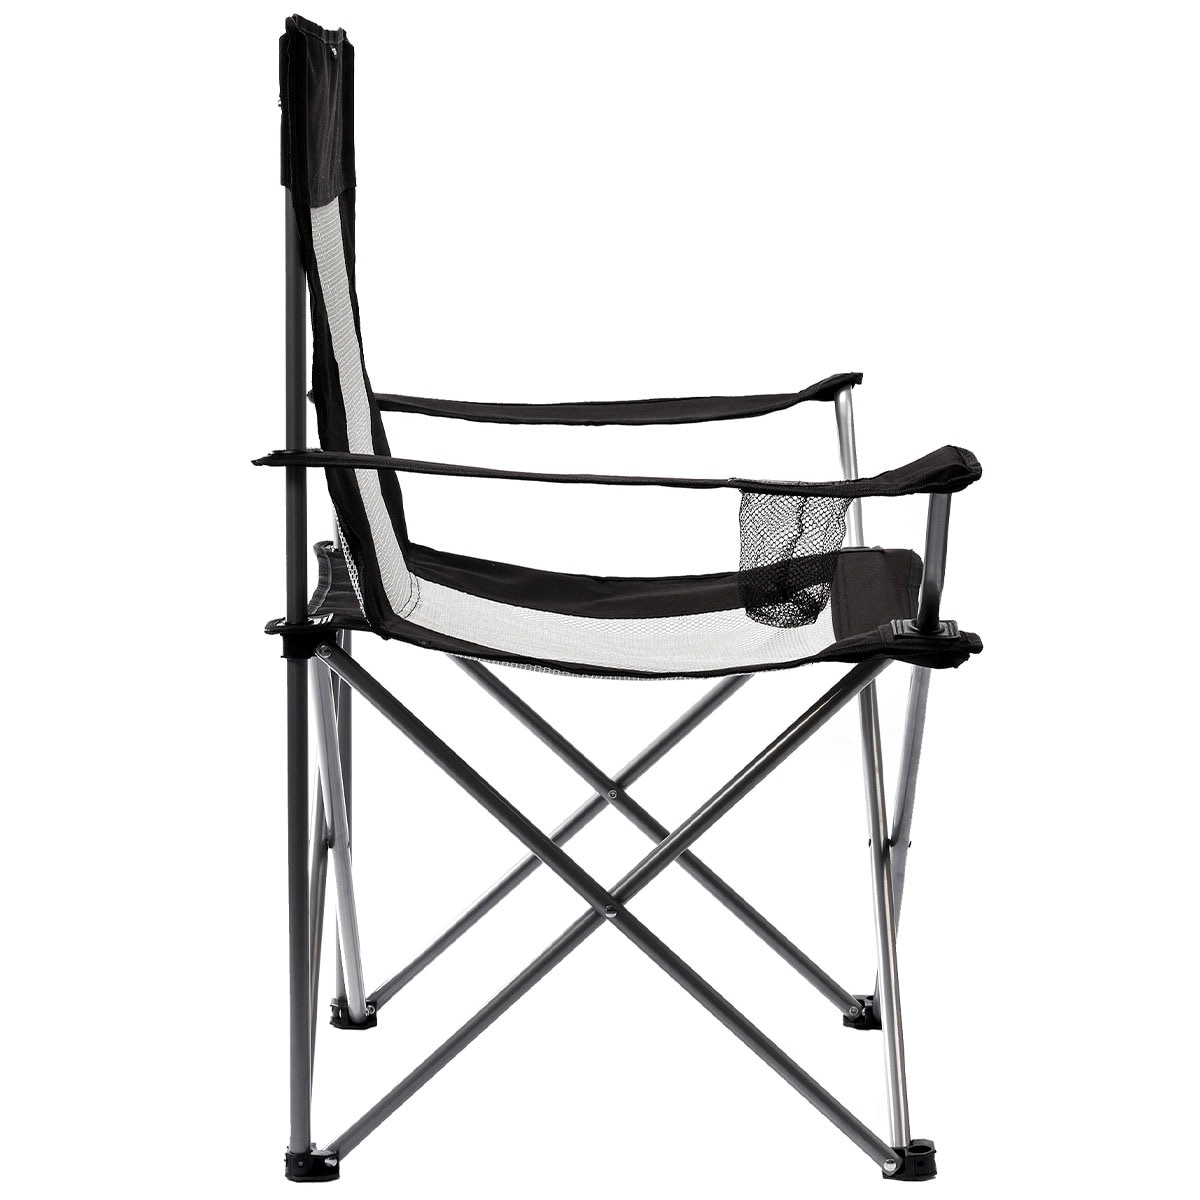 Krzesło turystyczne składane Meteor Tripper - Black